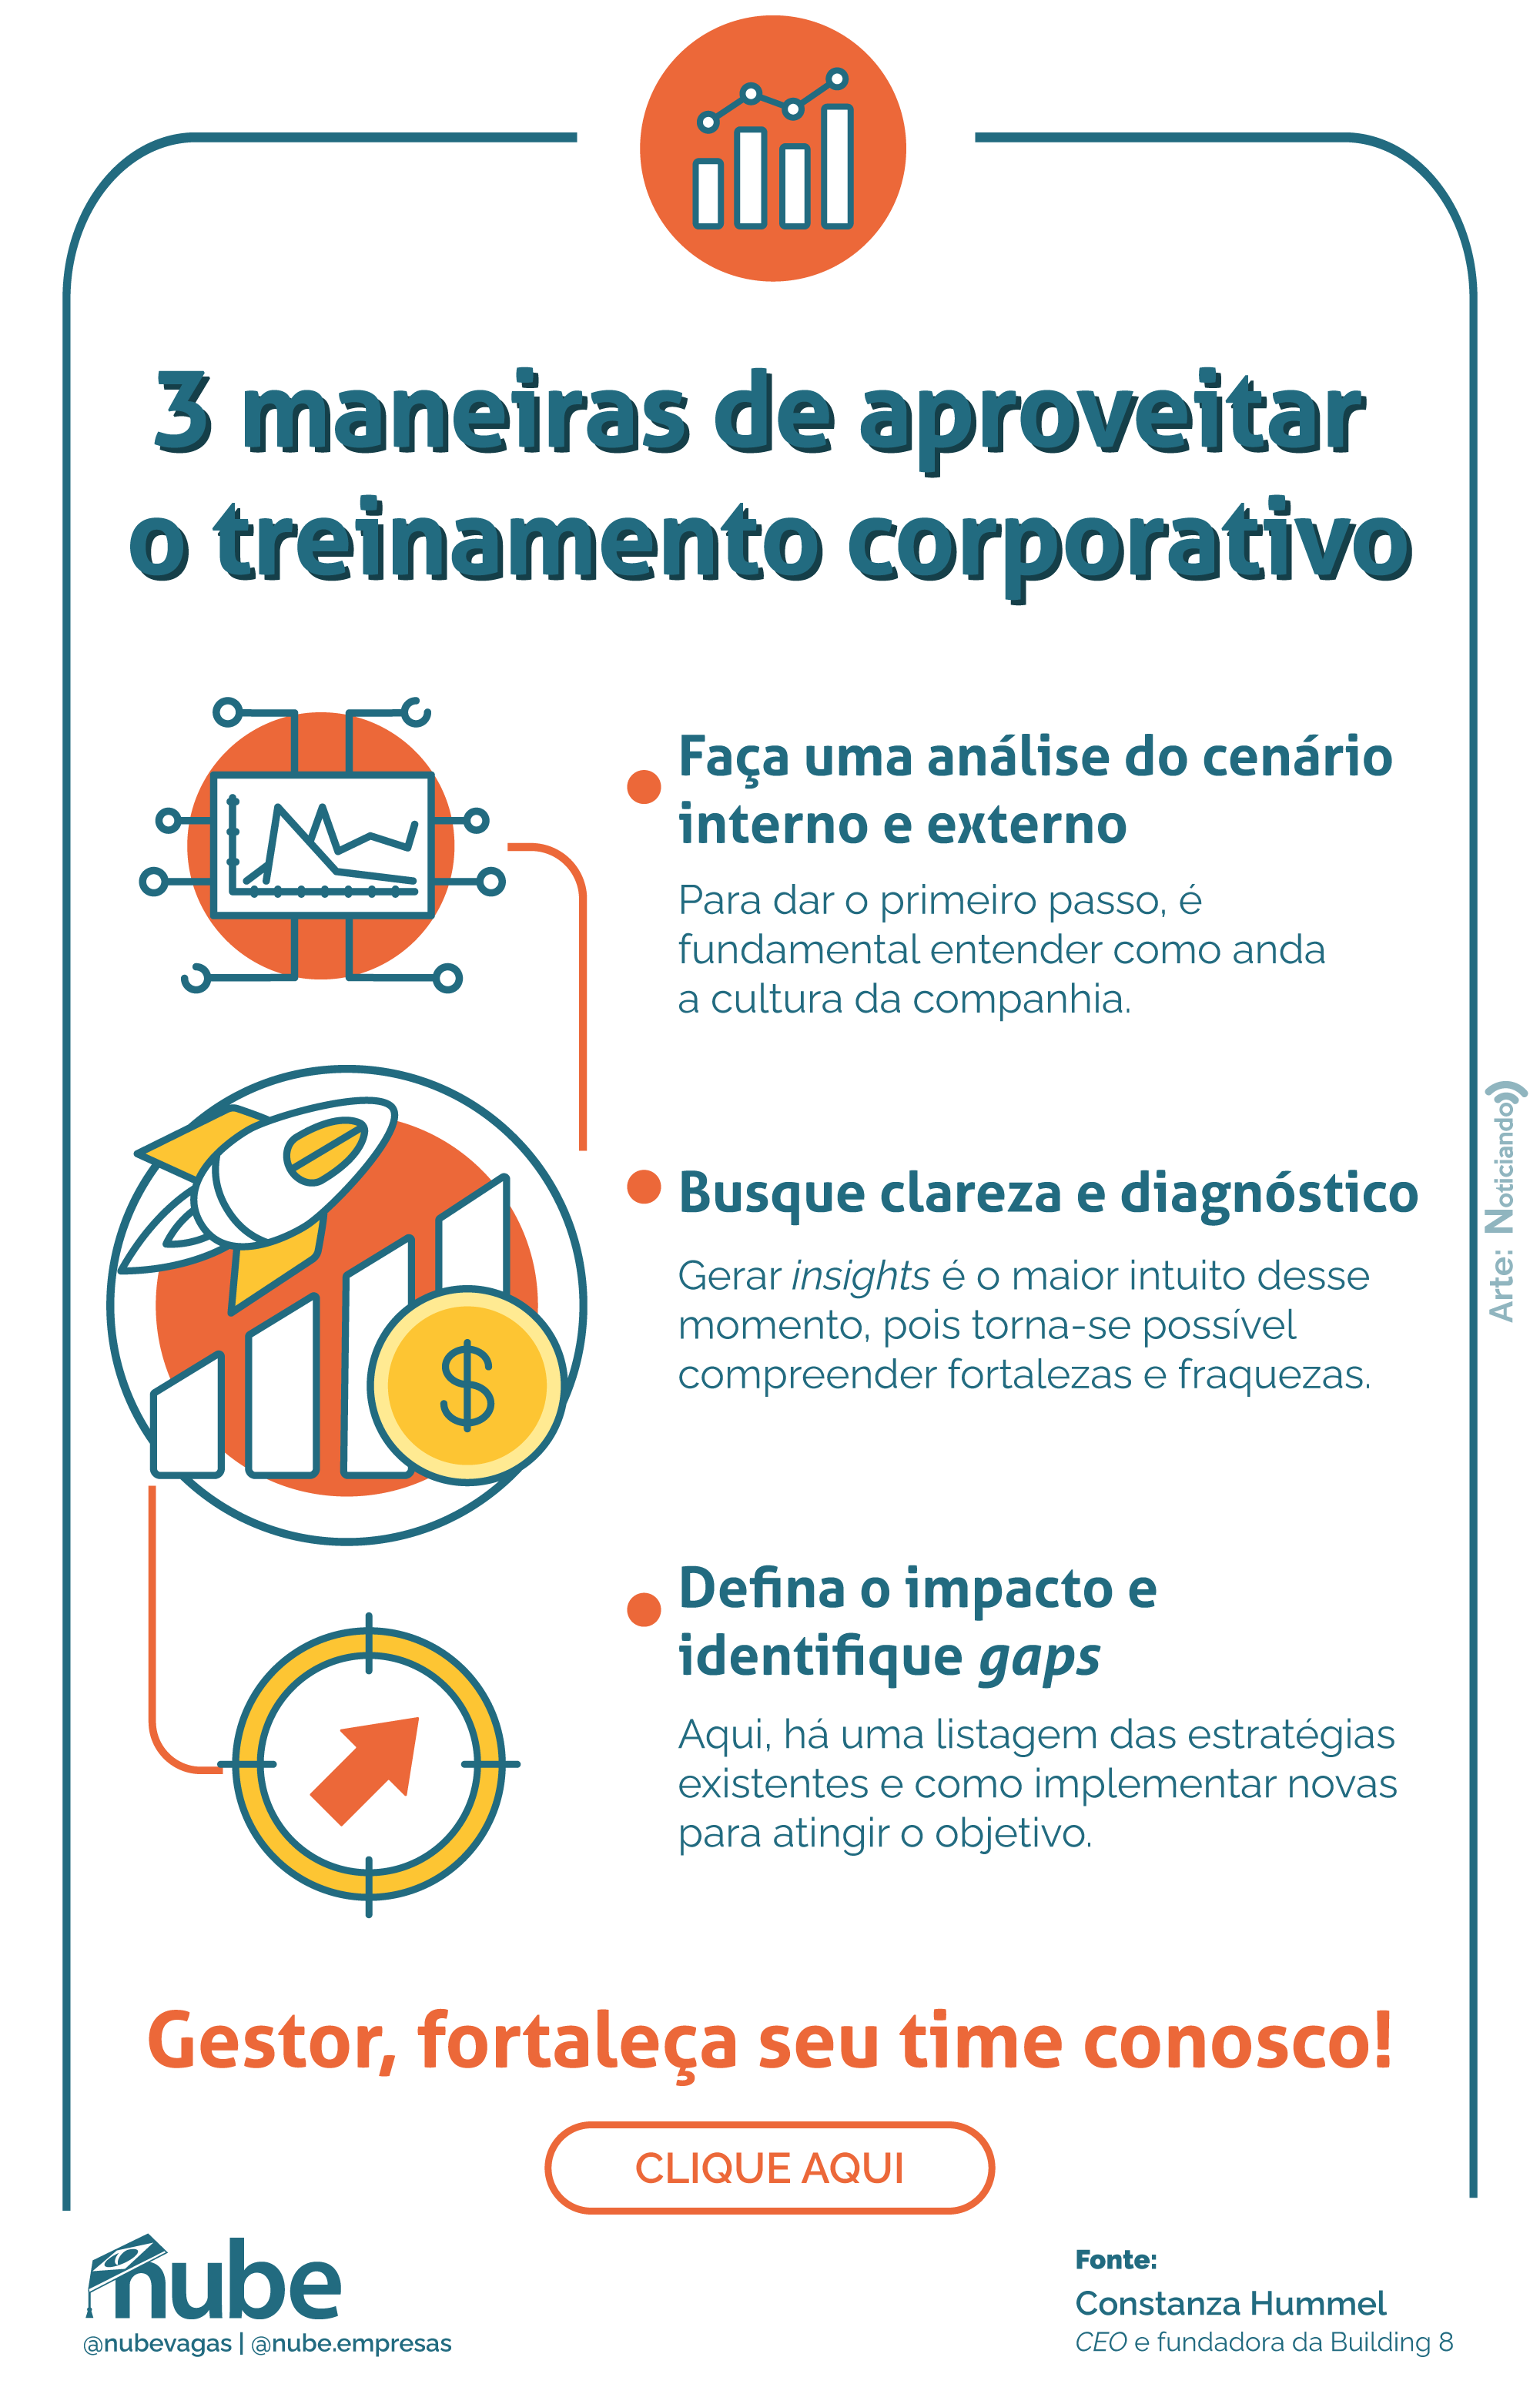 Infográfico azul, laranja e amarelo sobre 3 maneiras de aproveitar o treinamento corporativo